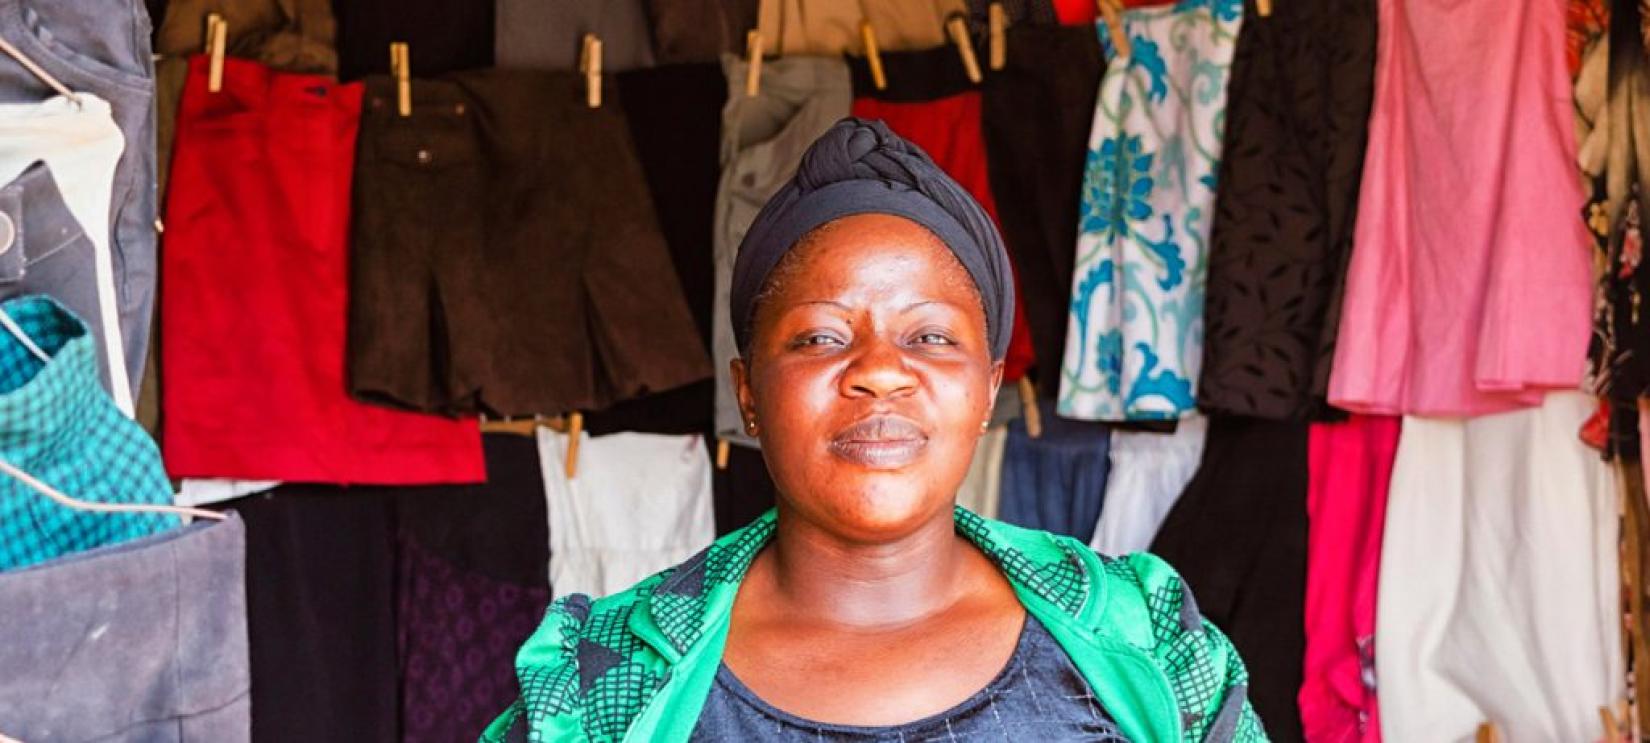 Mulheres comerciantes da Tanzânia contribuíram para aumentar a taxa de crescimento do país, mas ainda enfrentam desigualdades. Foto: UNCTAD